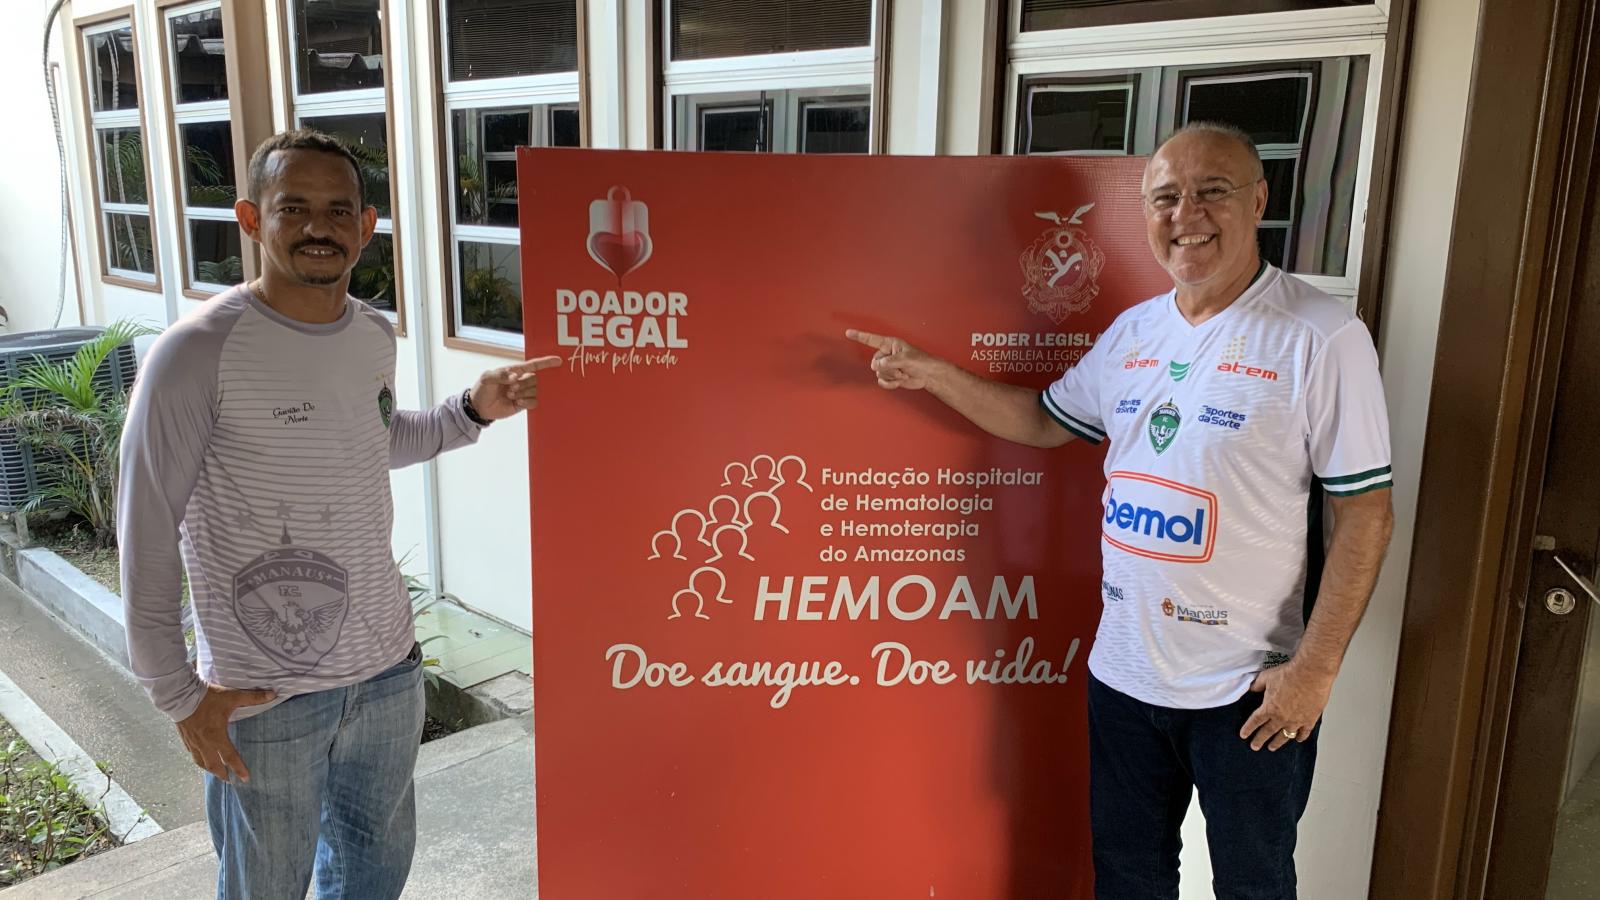 Campanha de Doação de Sangue: Manaus FC oferece ingressos para doadores de sangue no Hemoam